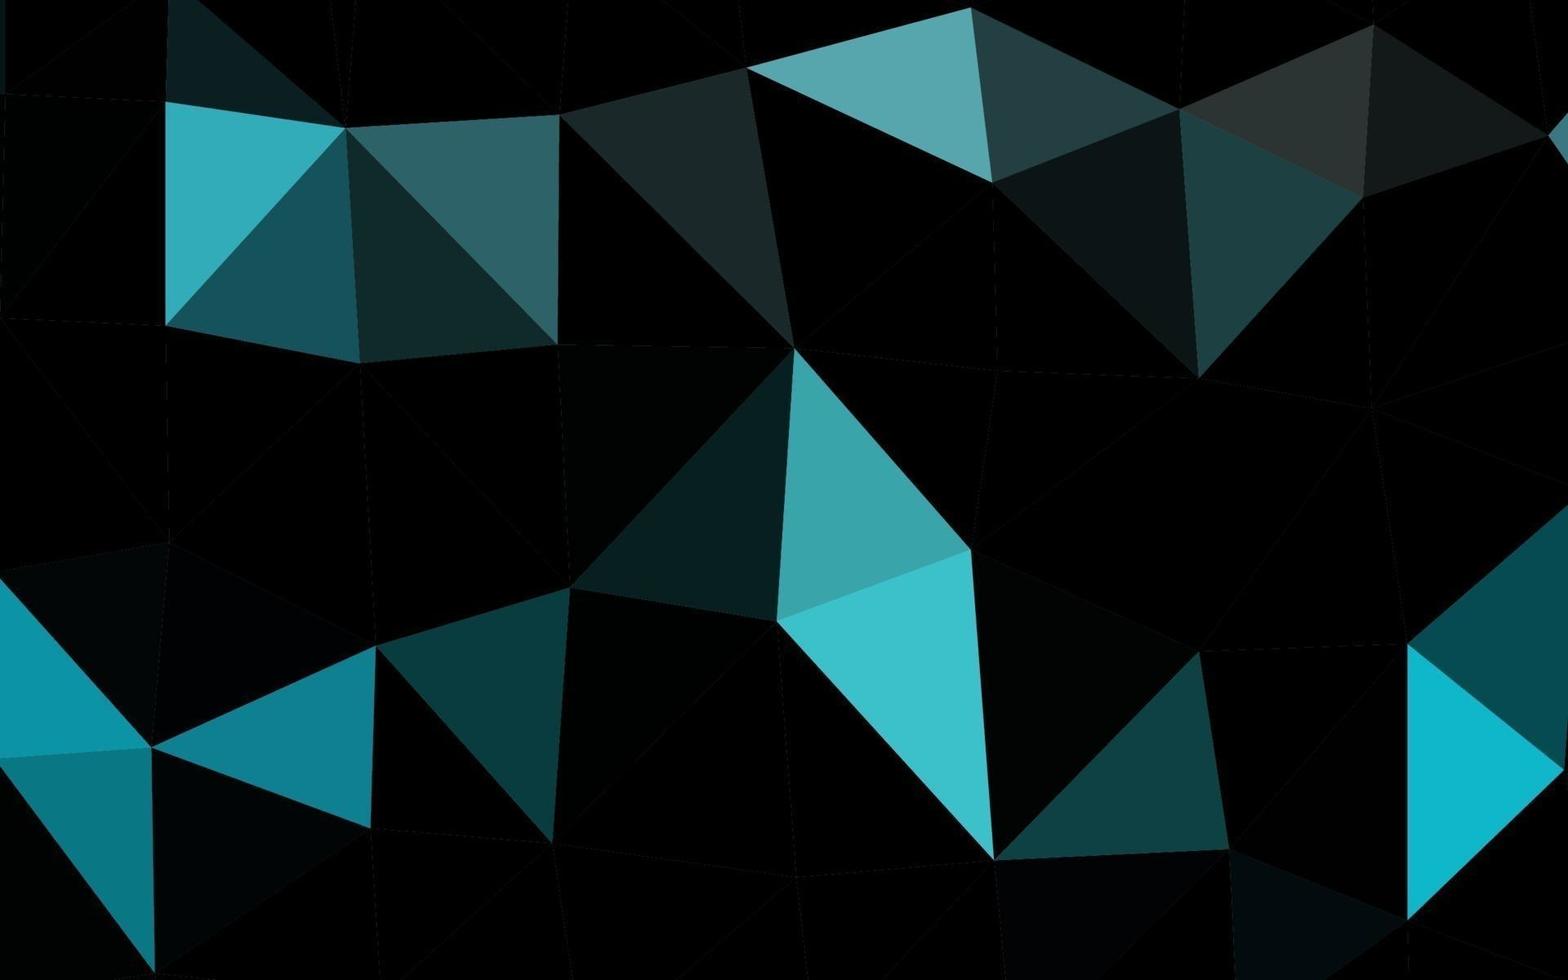 Telón de fondo de mosaico abstracto de vector azul claro.